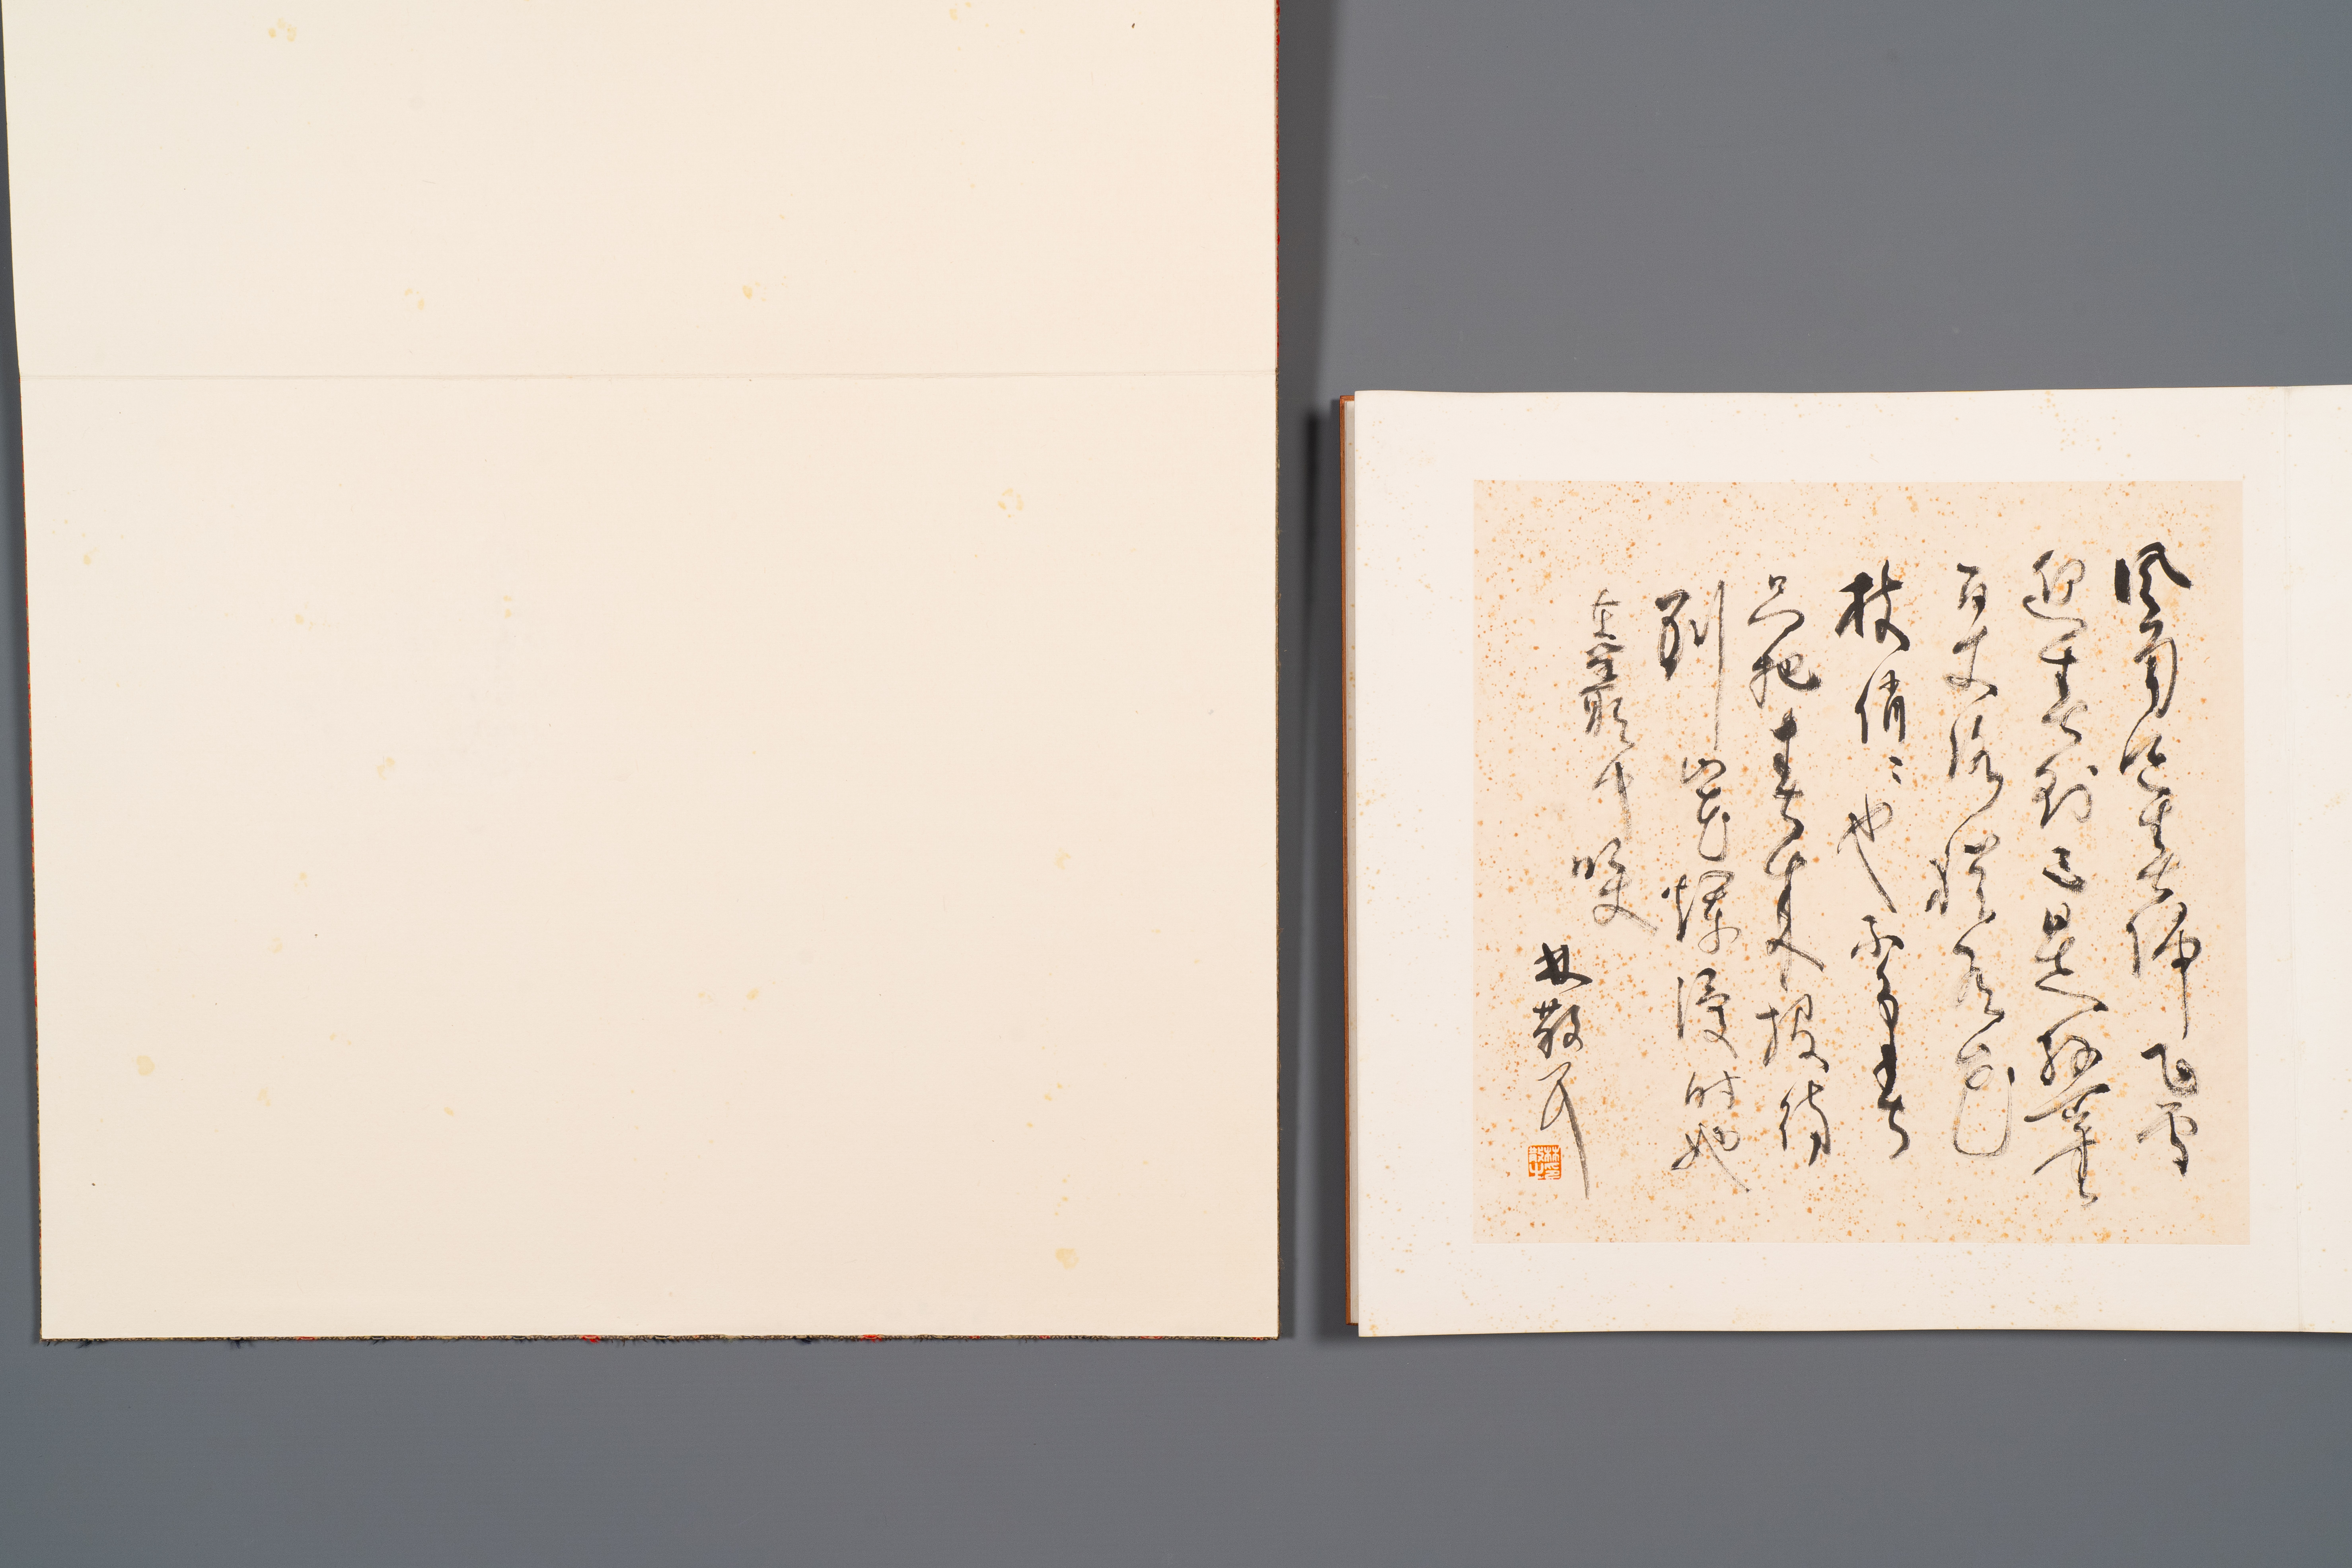 Three albums: 'Jiang Hanting æ±Ÿå¯’æ±€ (1904-1963), Lin Sanzhi æž—æ•£ä¹‹ (1898-1989) and Qi Gong å¯ - Image 13 of 23